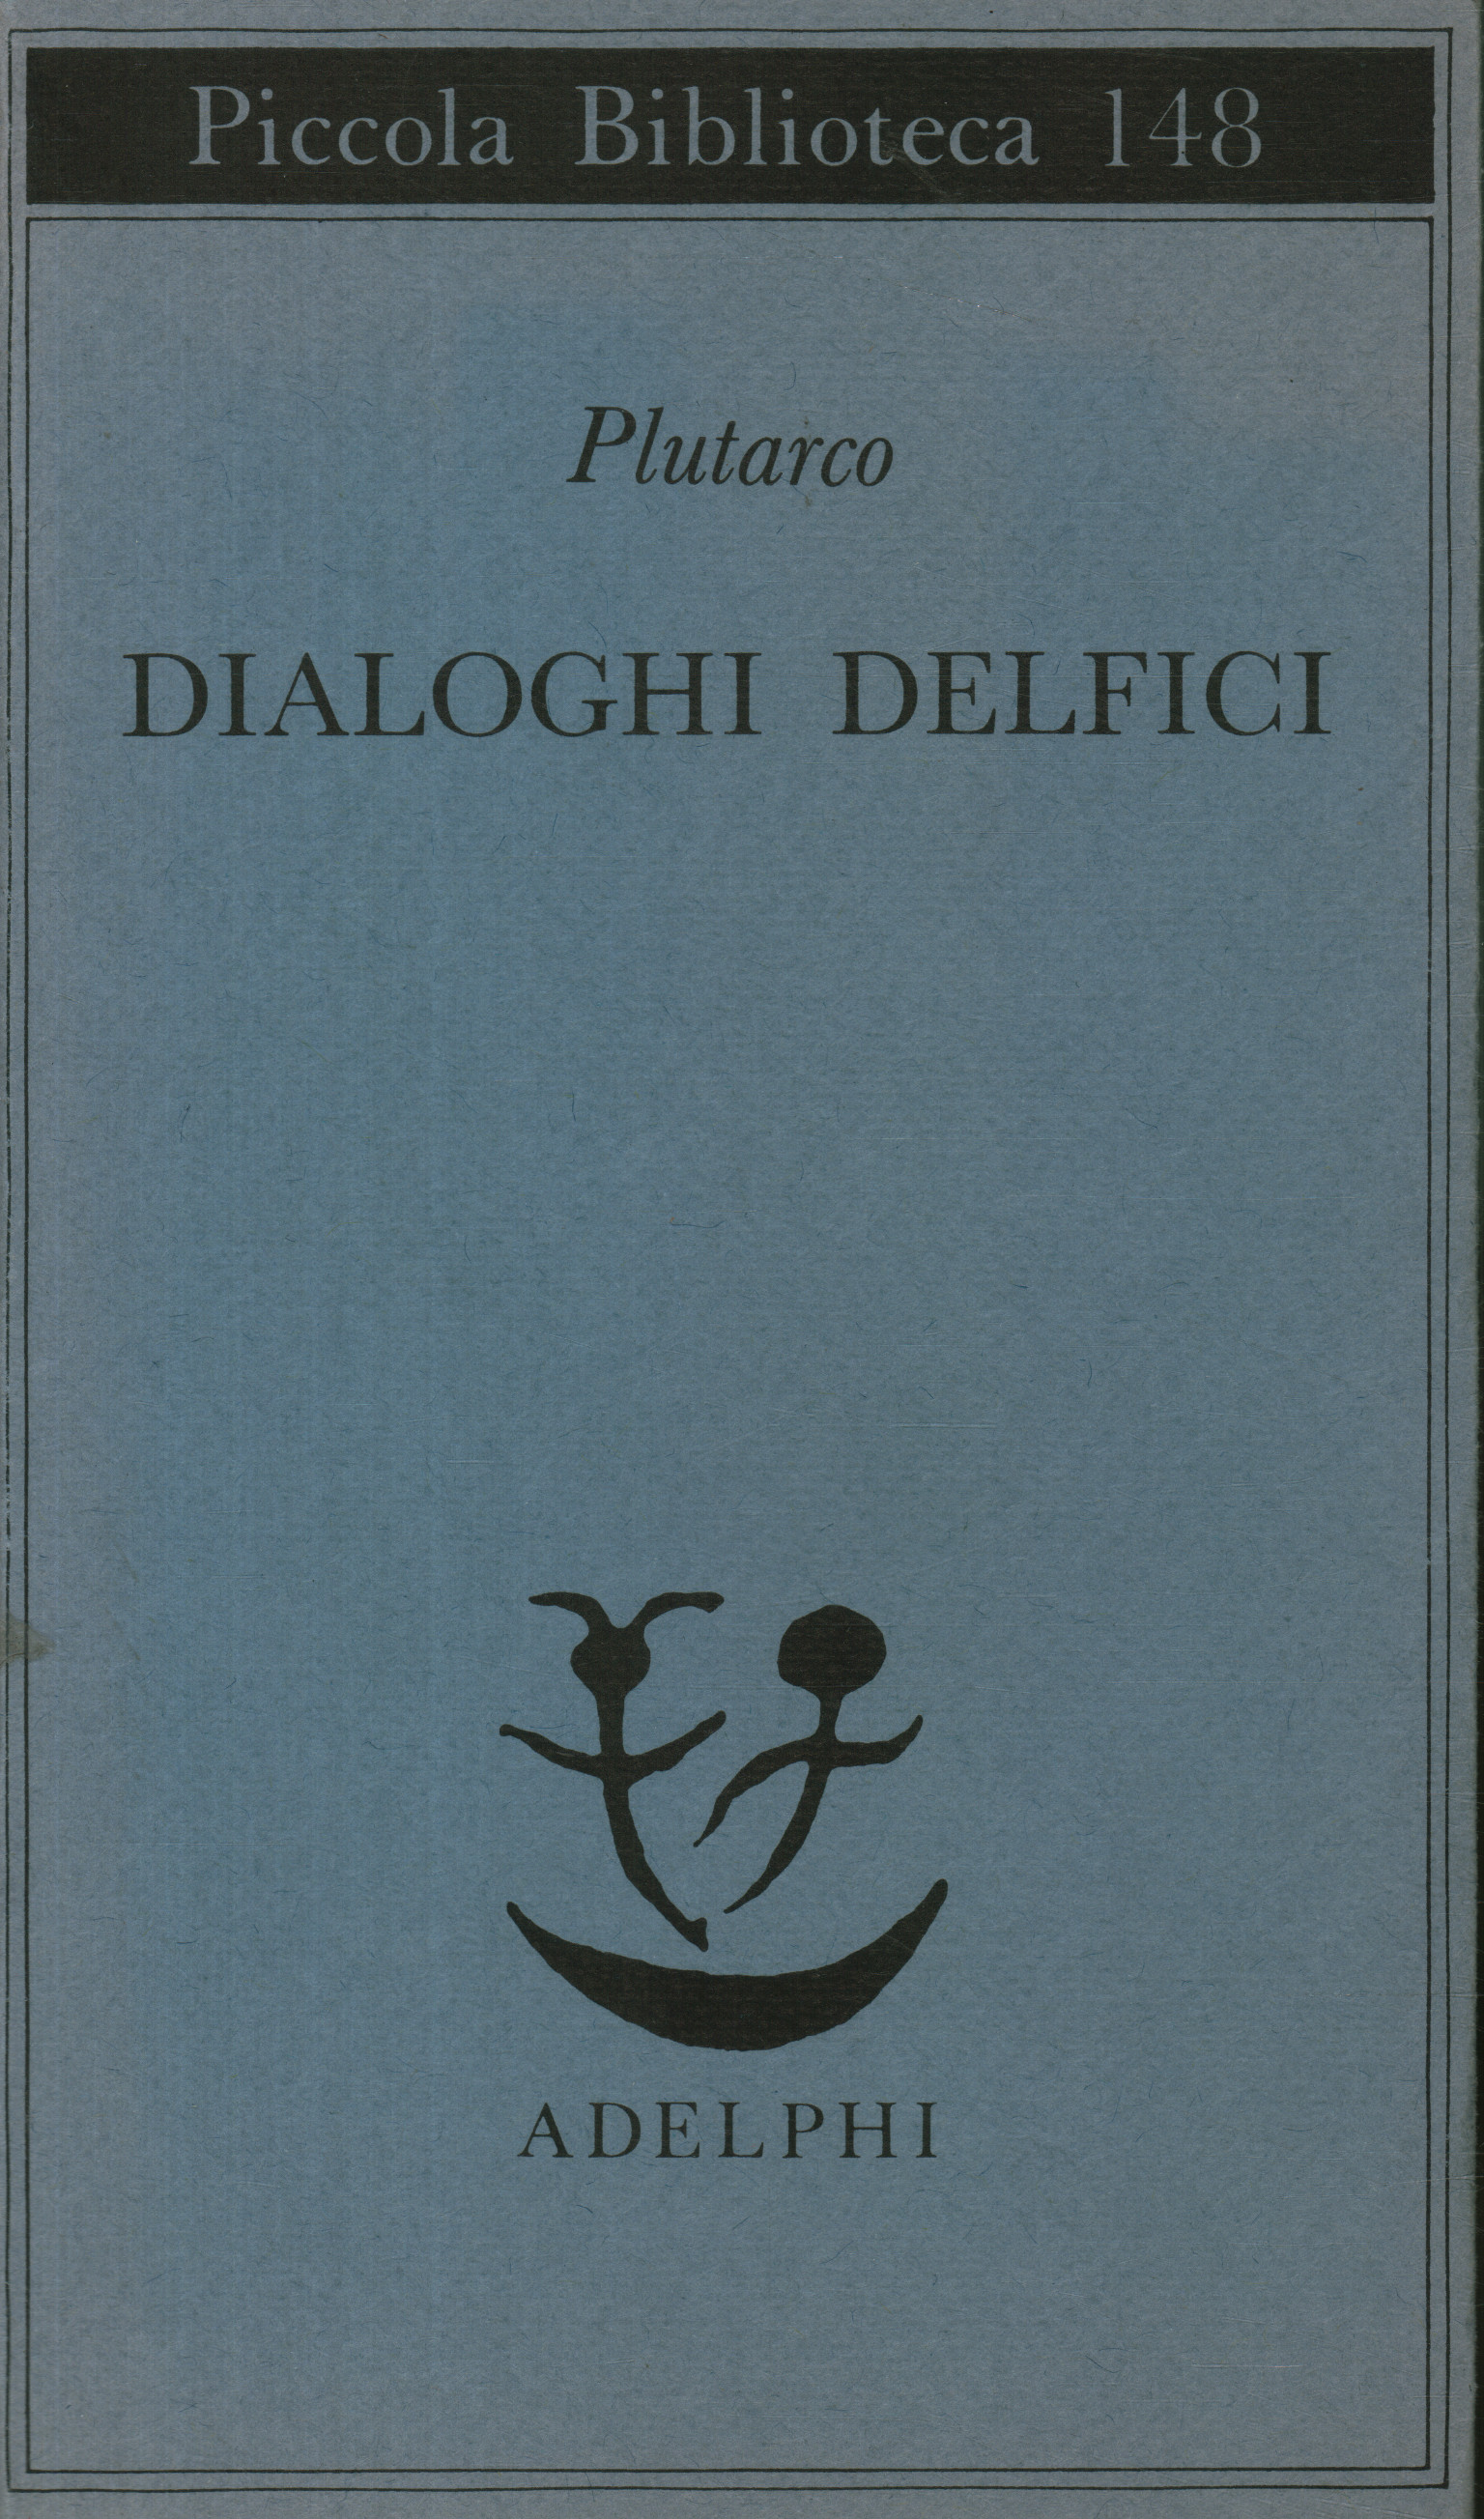 Delphic dialogues